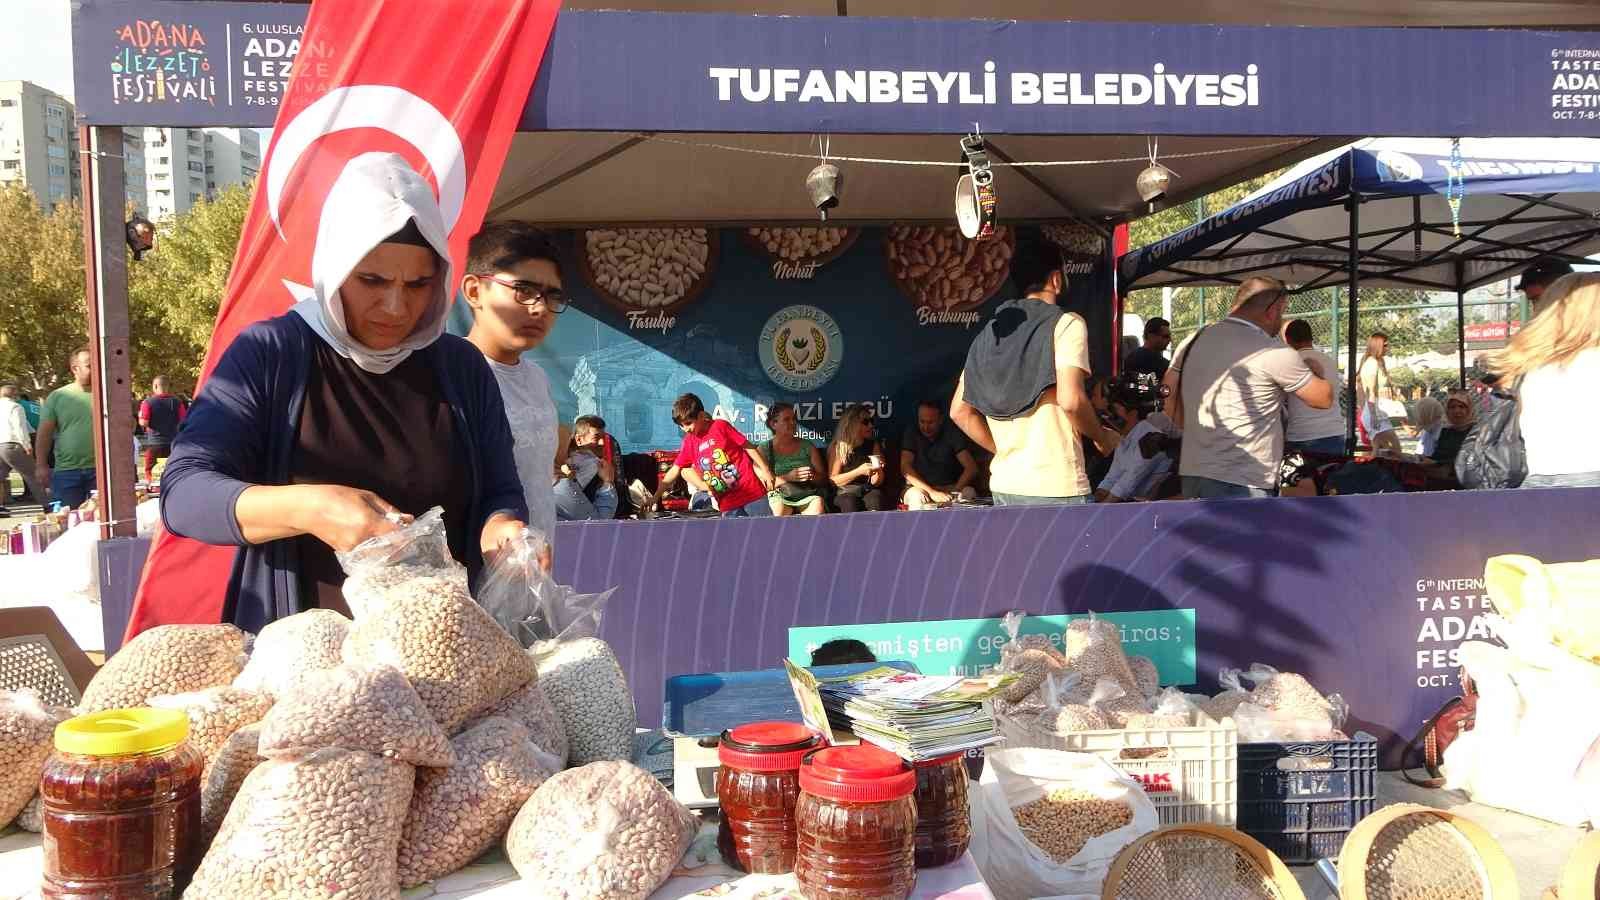 Tufanbeyli’nin Tescilli Fasulyesi lezzeti ile yarıştı